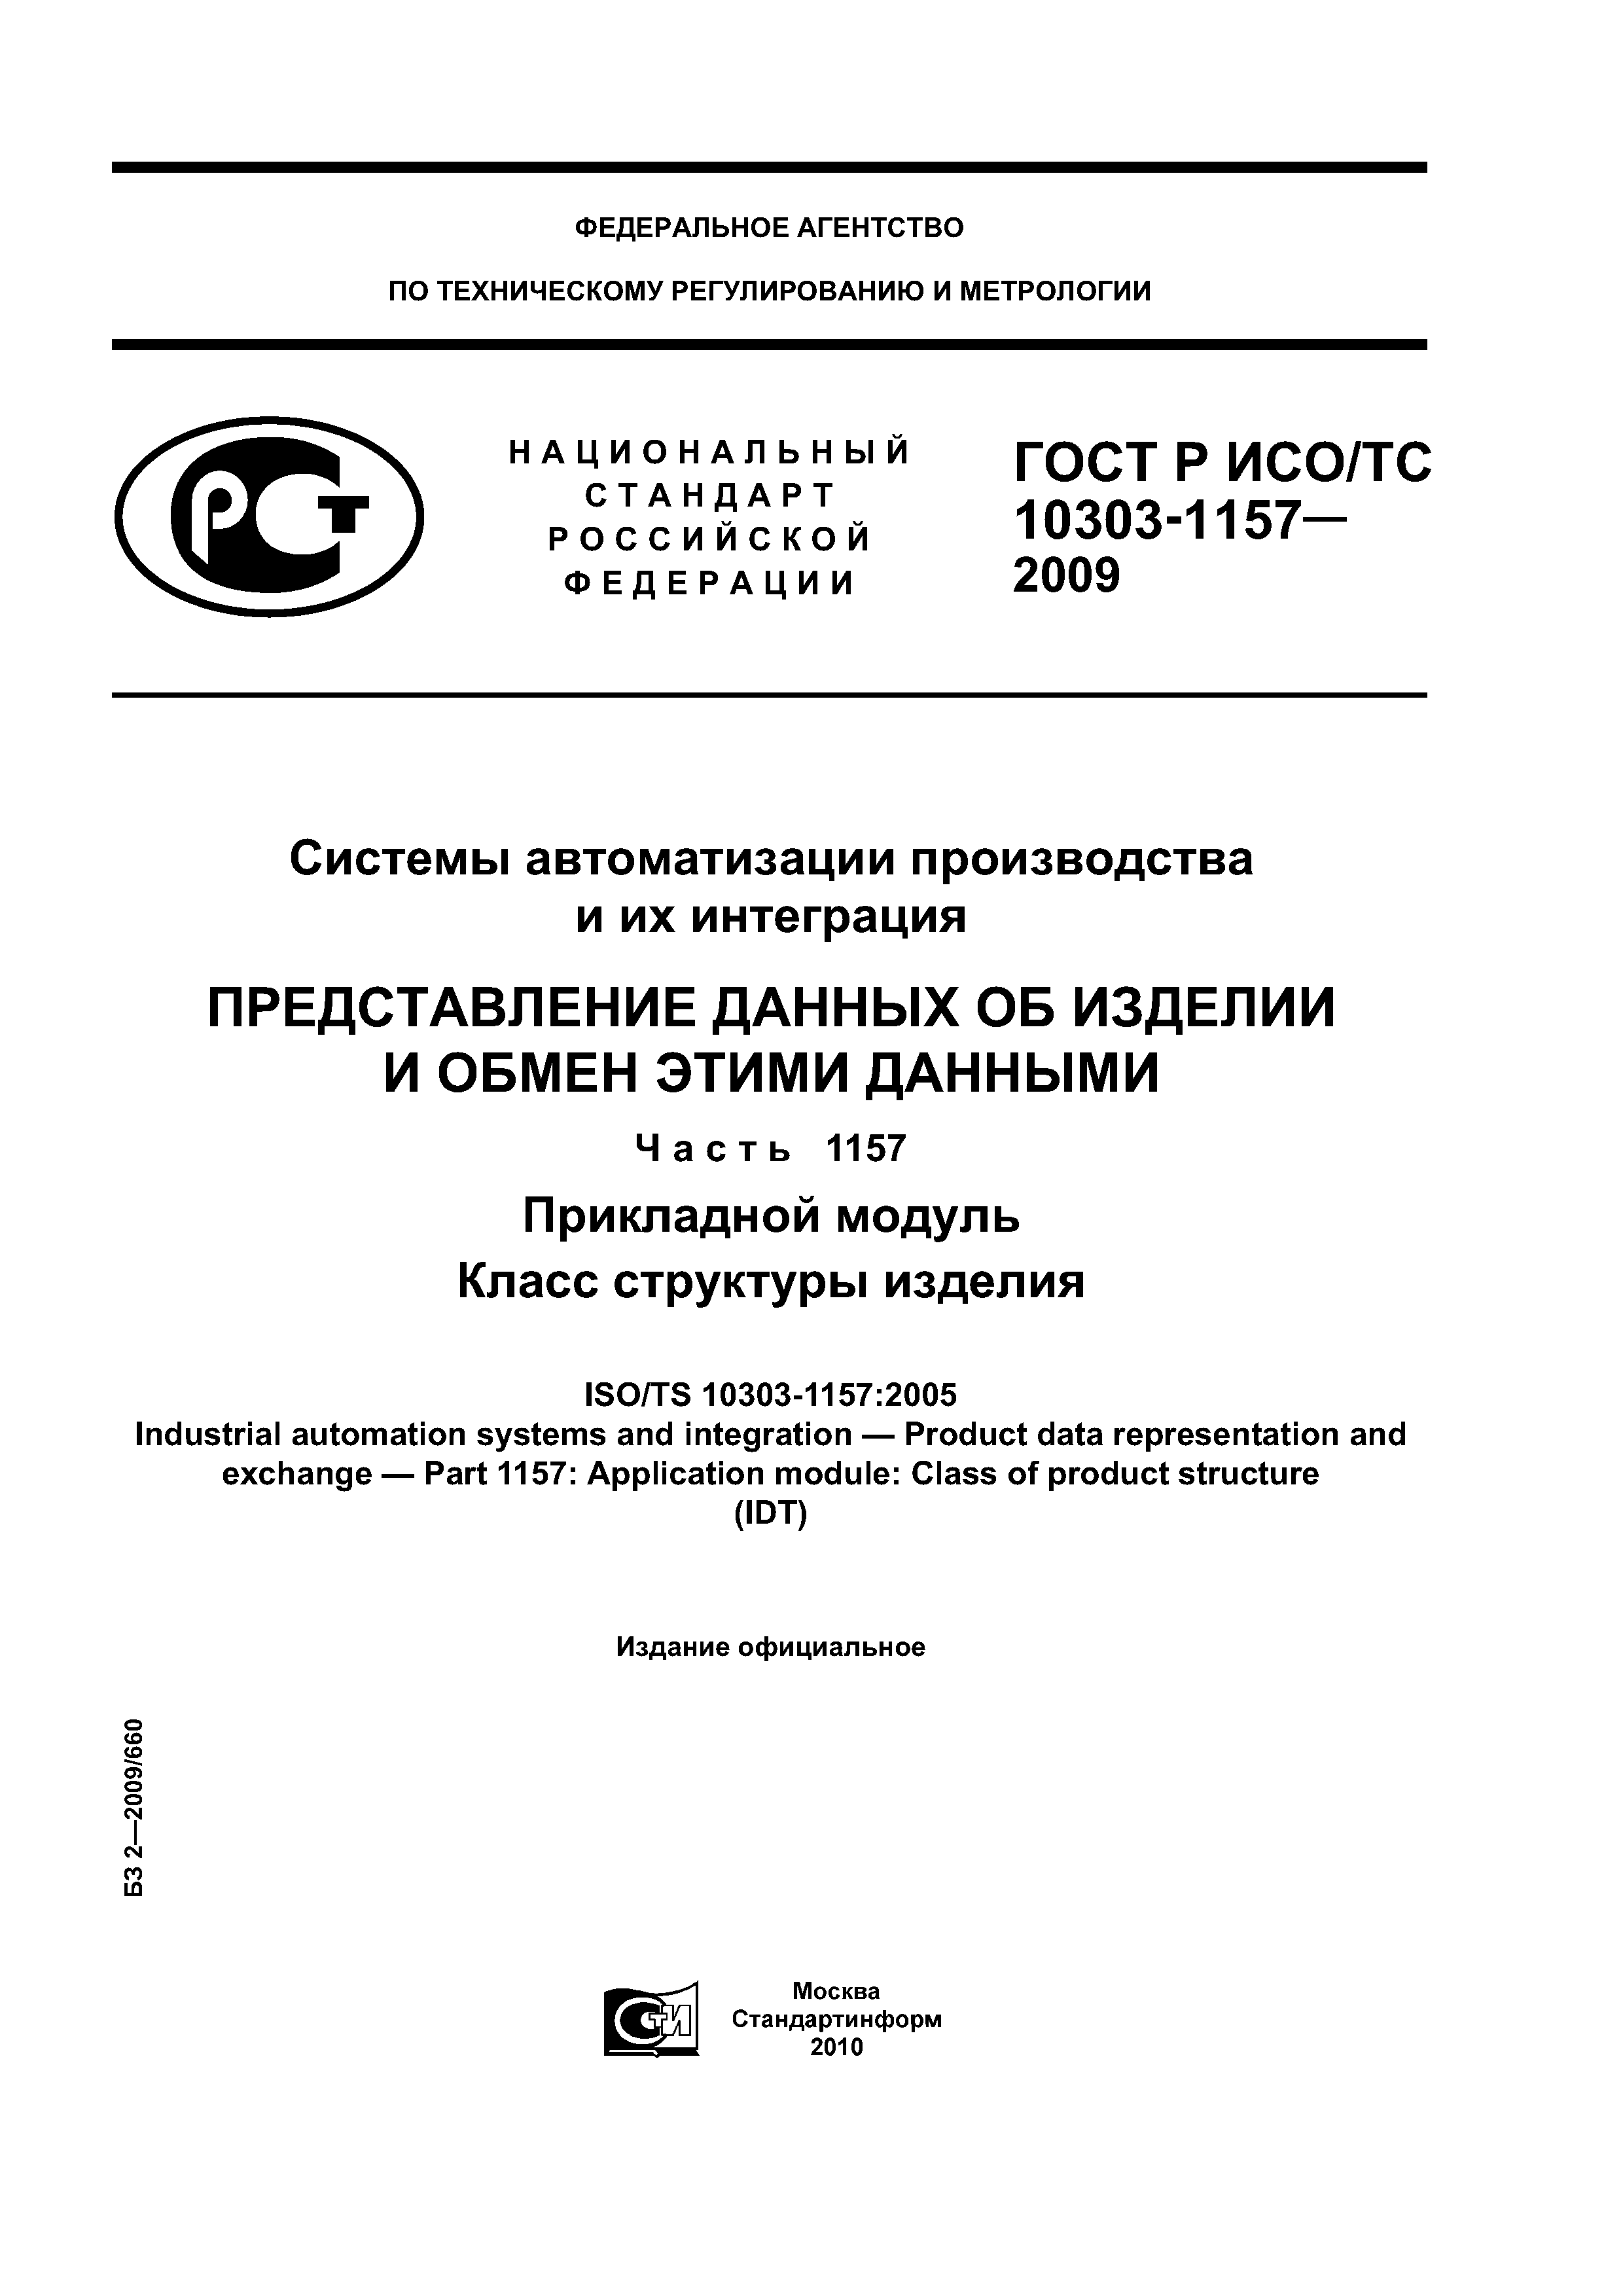 ГОСТ Р ИСО/ТС 10303-1157-2009